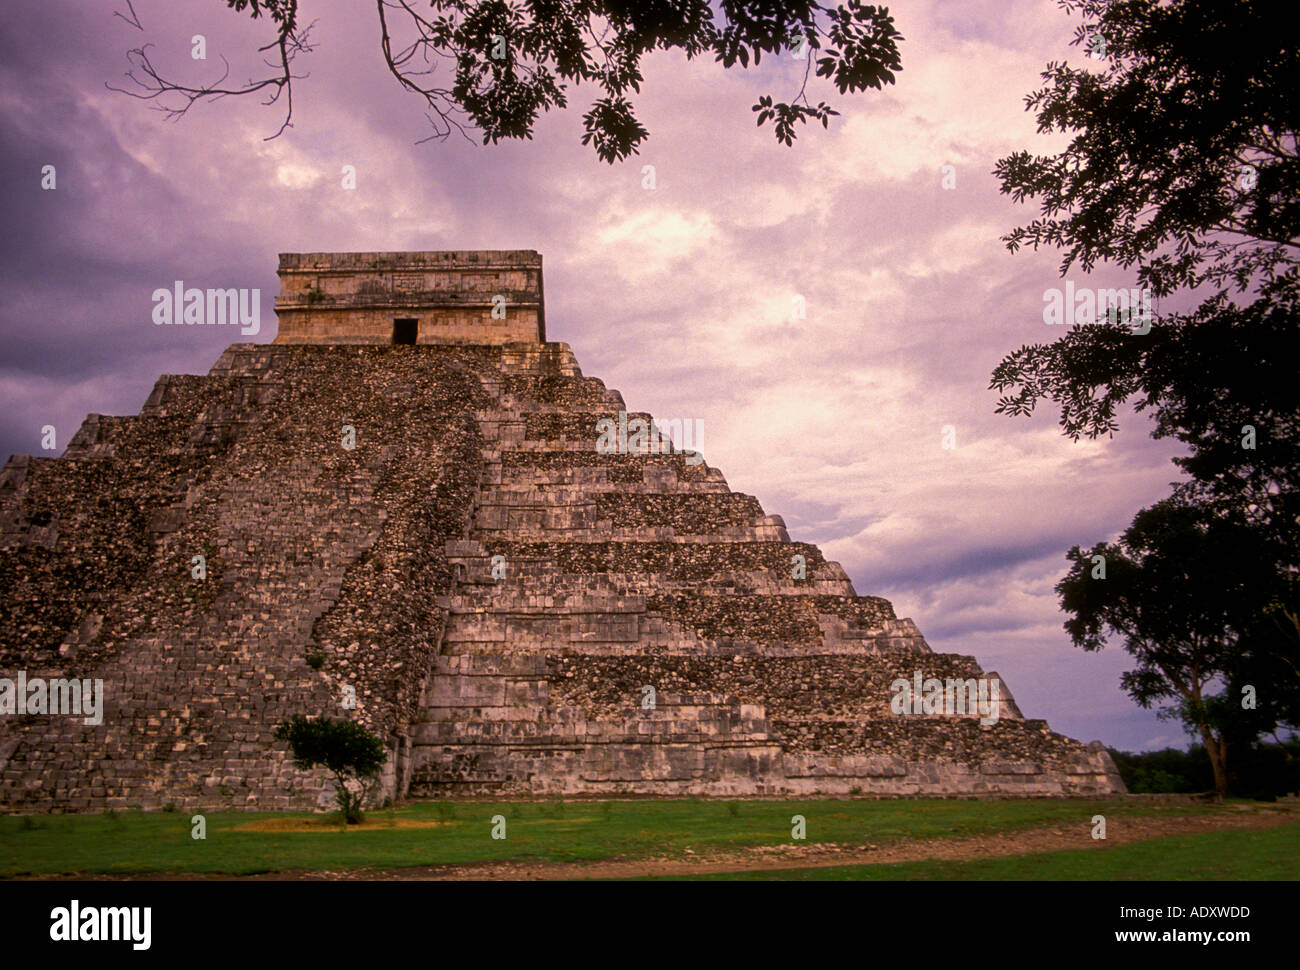 El Castillo, pyramide de Kukulcan, Chichen Itza, Site archéologique de Chichen Itza, l'état du Yucatan, péninsule du Yucatan, Mexique Banque D'Images